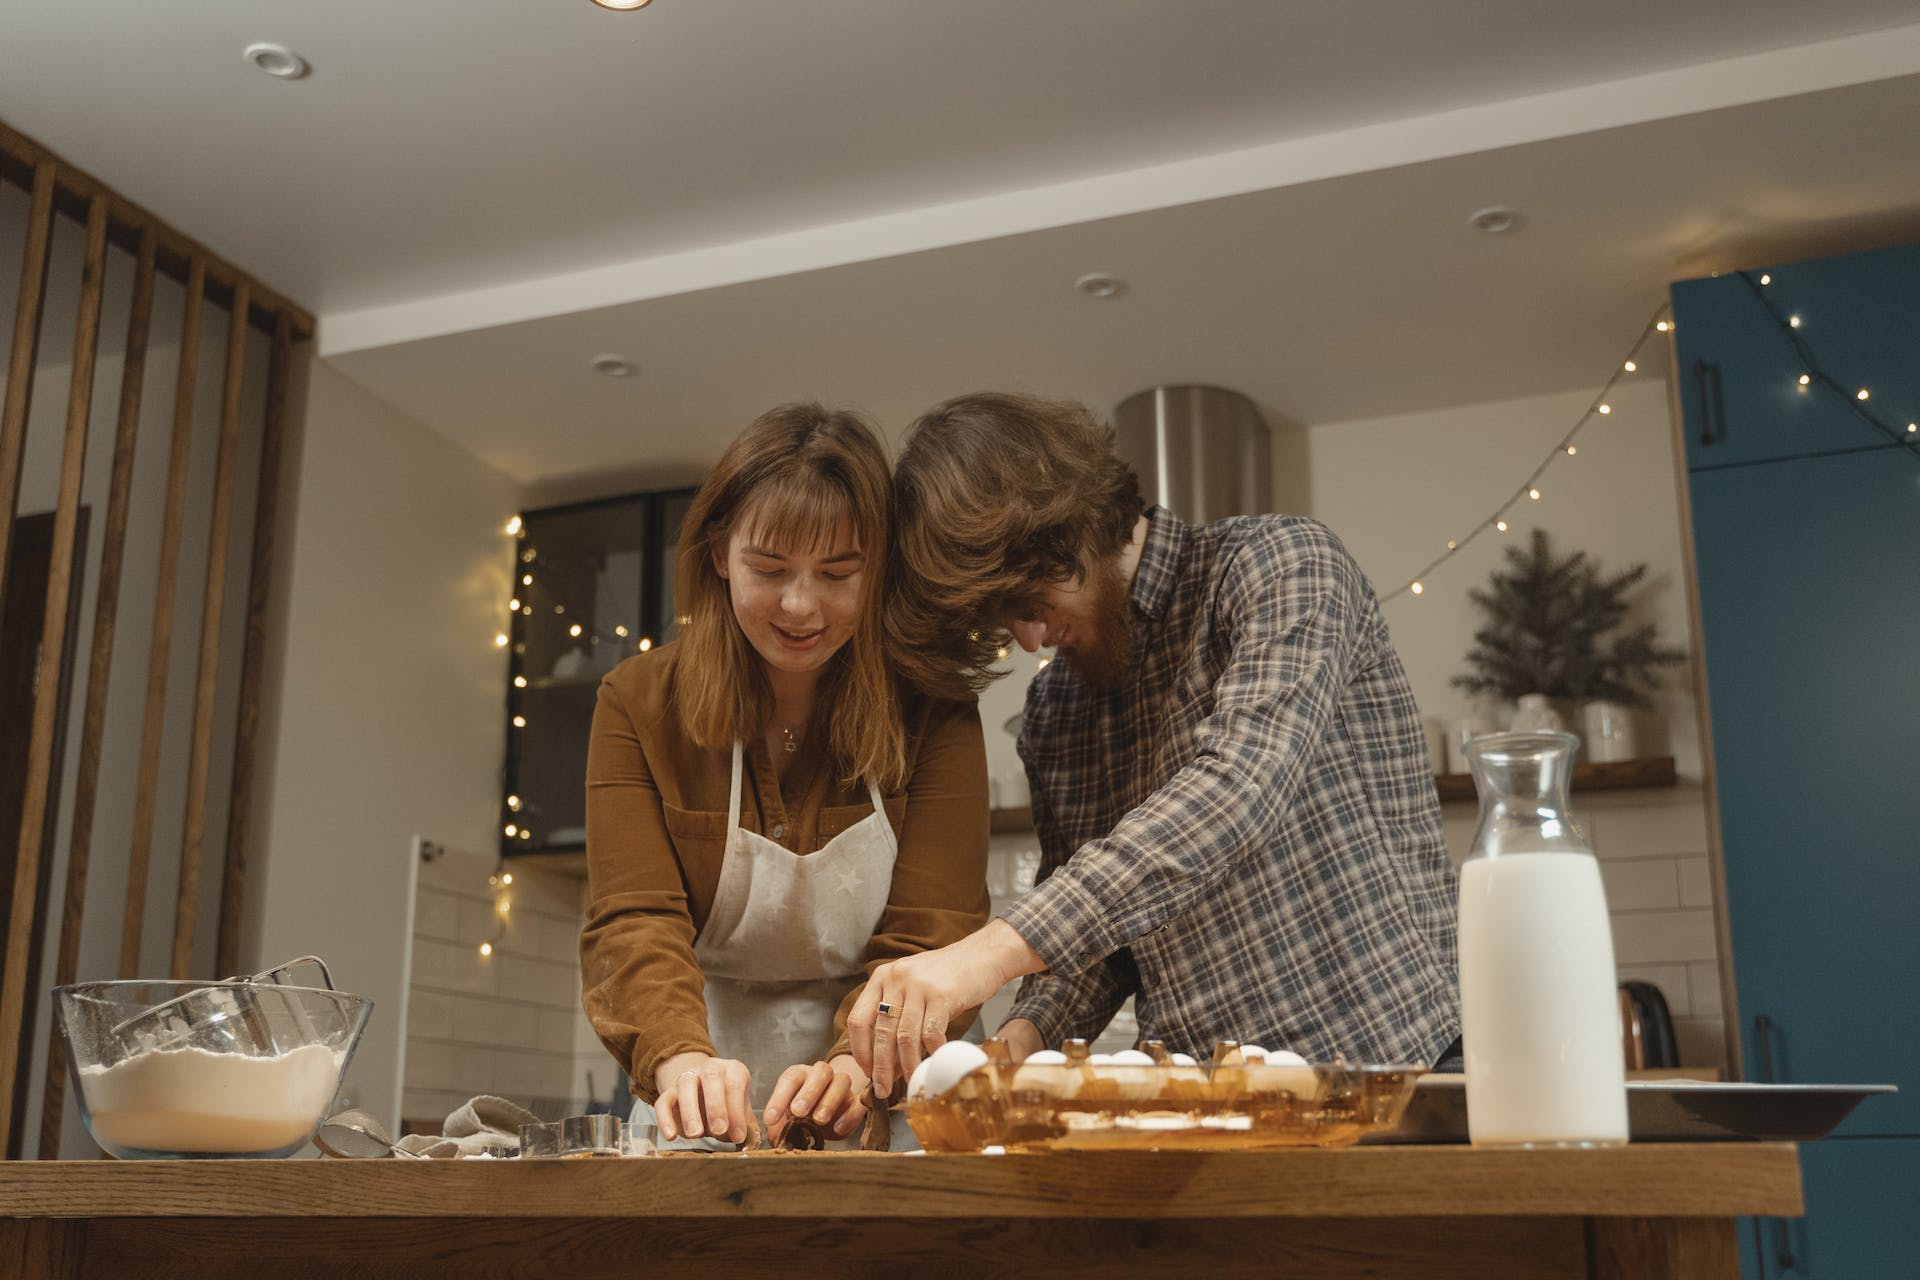 Un mari qui aide sa femme dans la cuisine | Source : Pexels